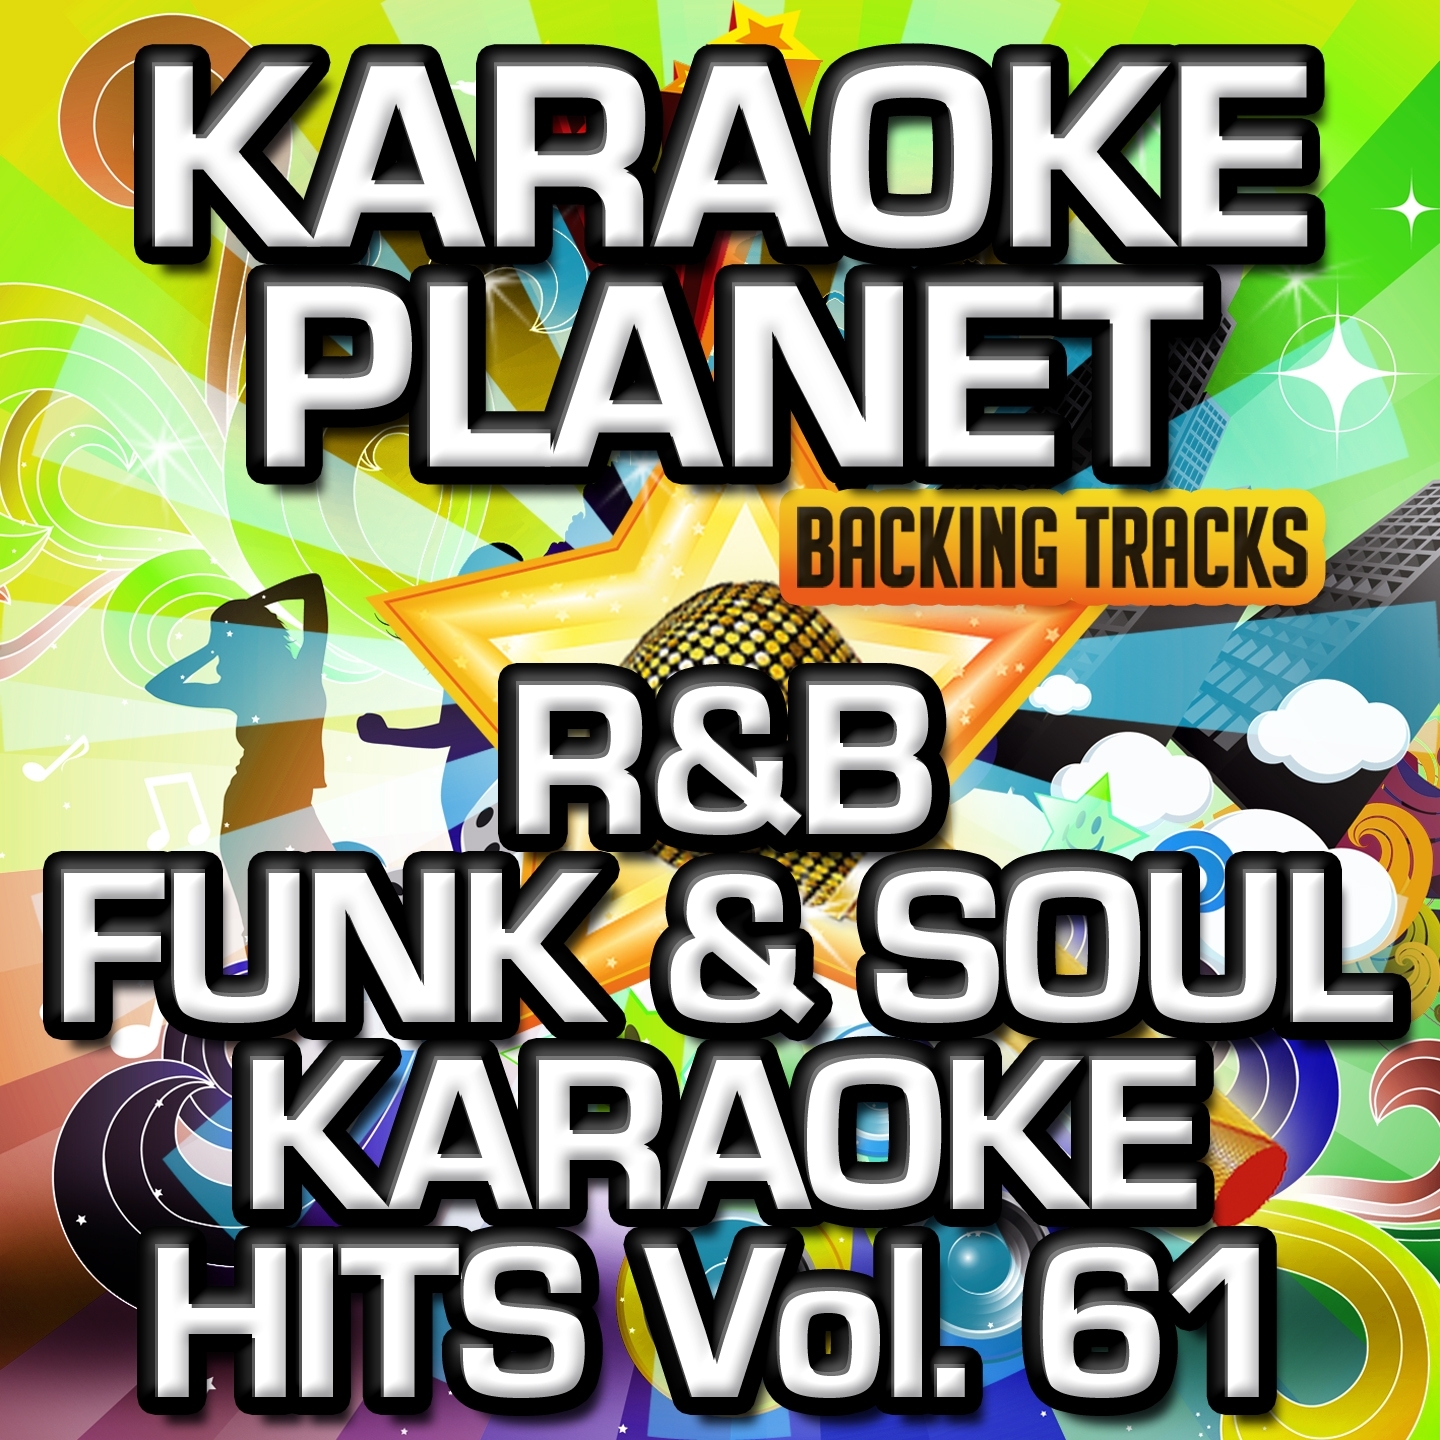 R&B Funk & Soul Karaoke Hits, Vol. 61